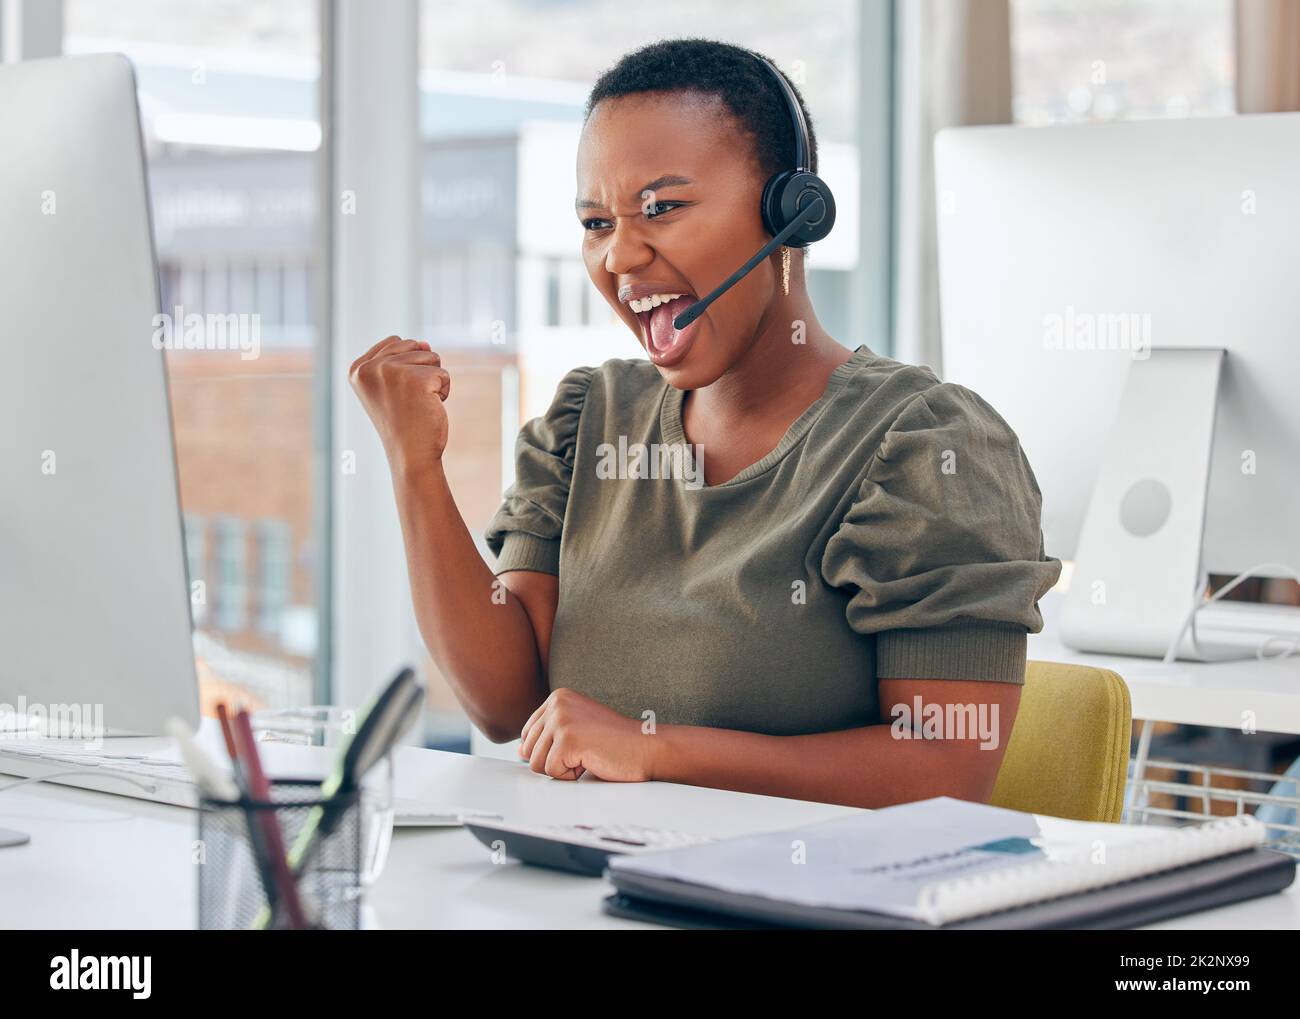 Je fais plus de ventes que quiconque dans mon équipe. Photo d'une femme d'affaires qui a l'air gaie en travaillant dans un centre d'appels. Banque D'Images